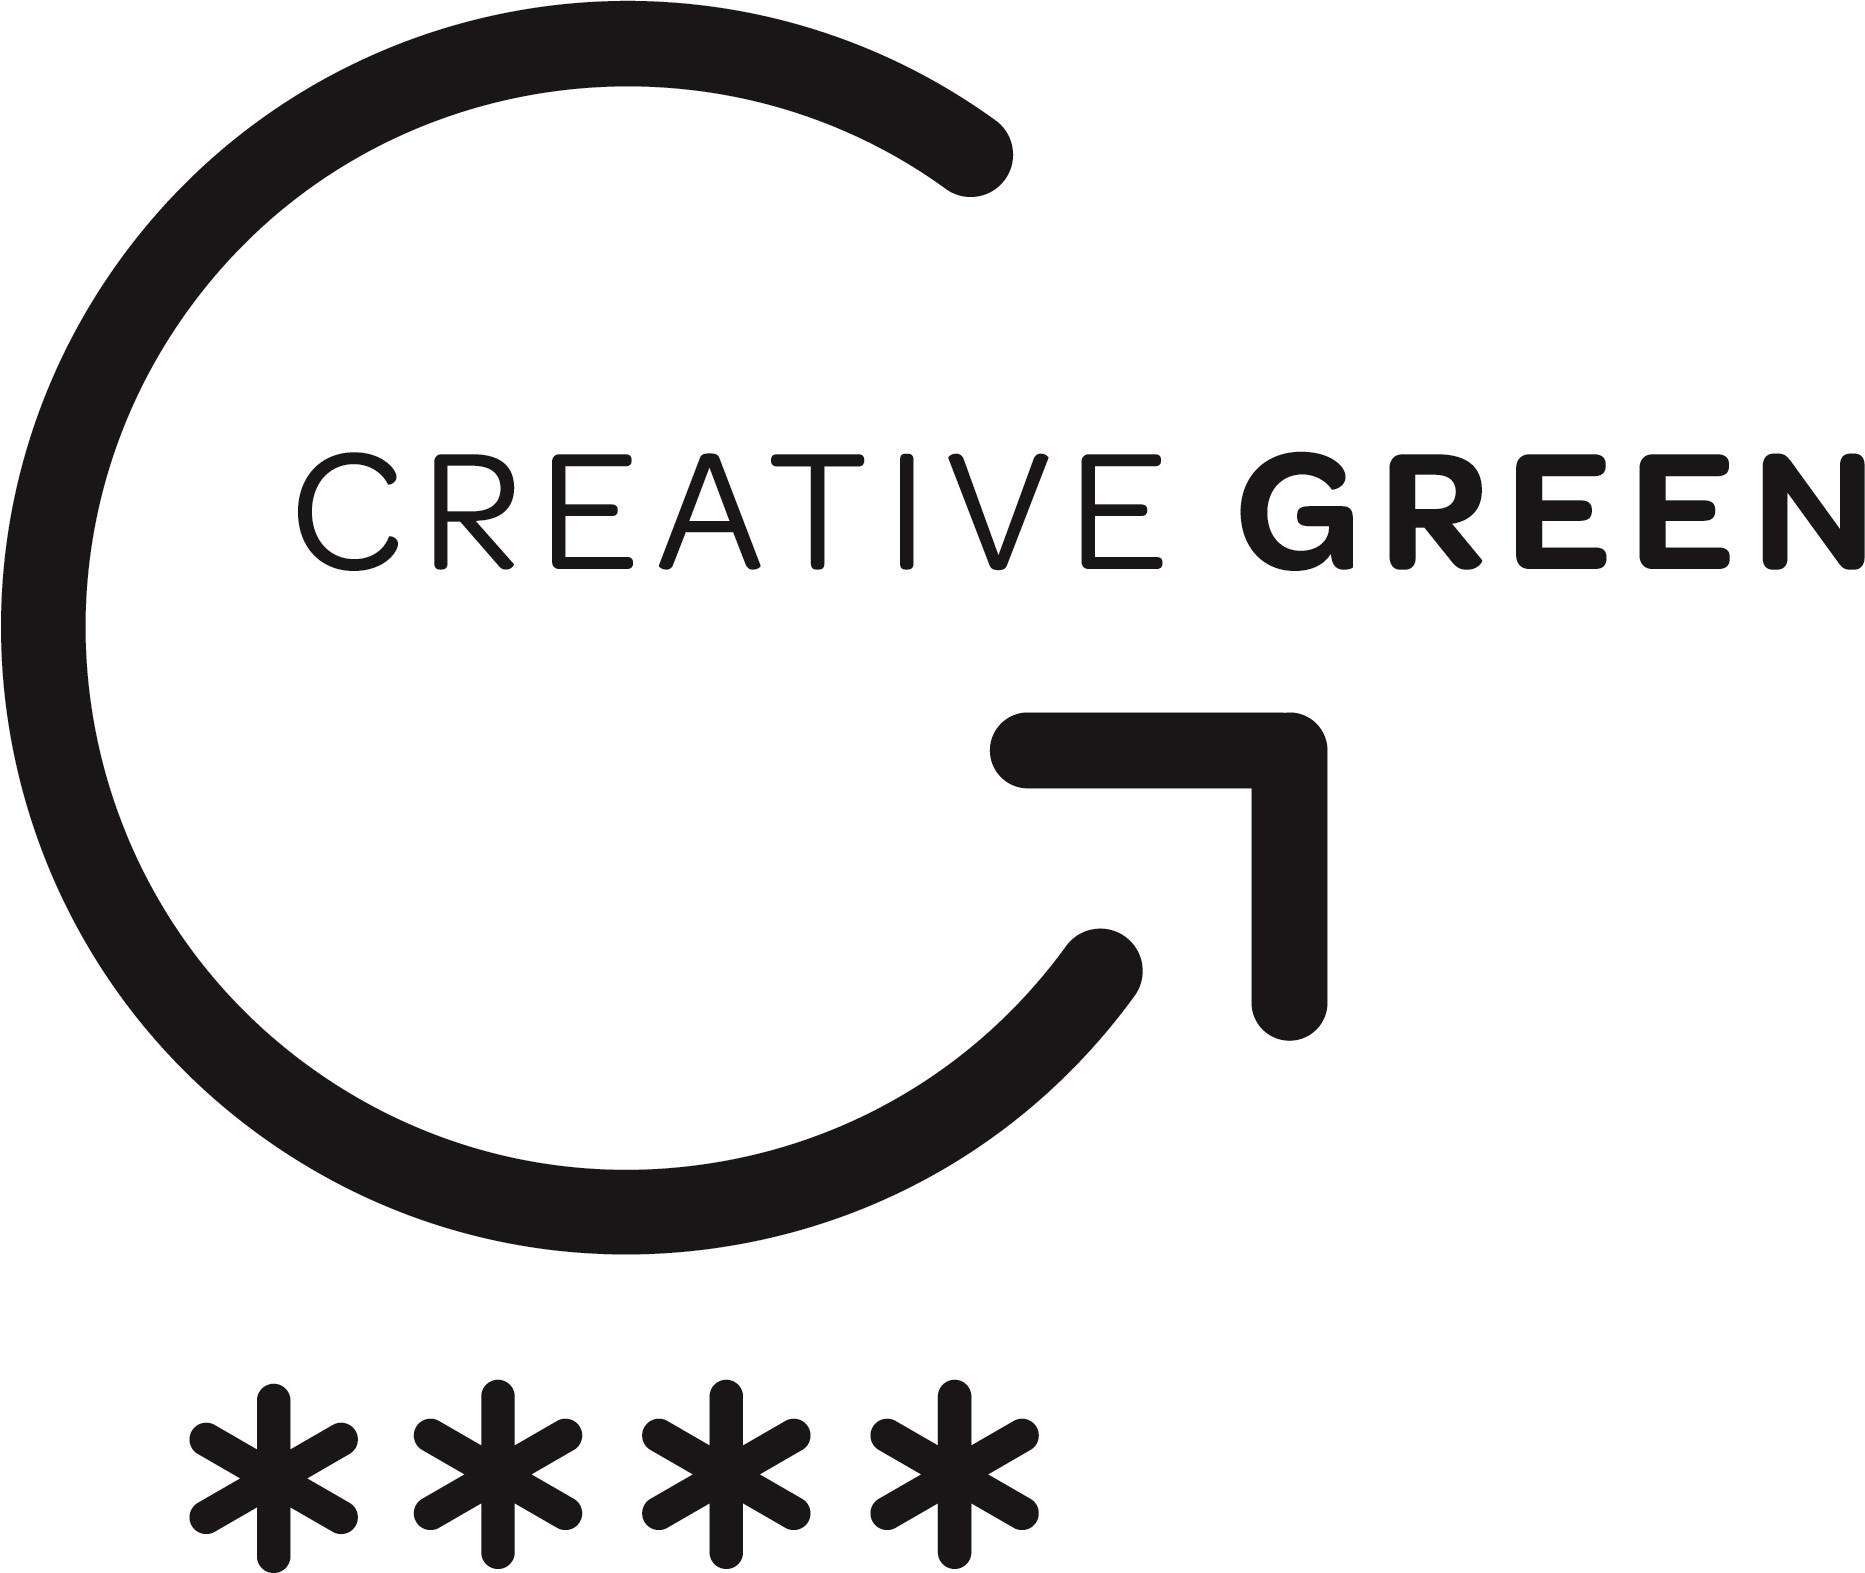 Creative Green - 4 Stars